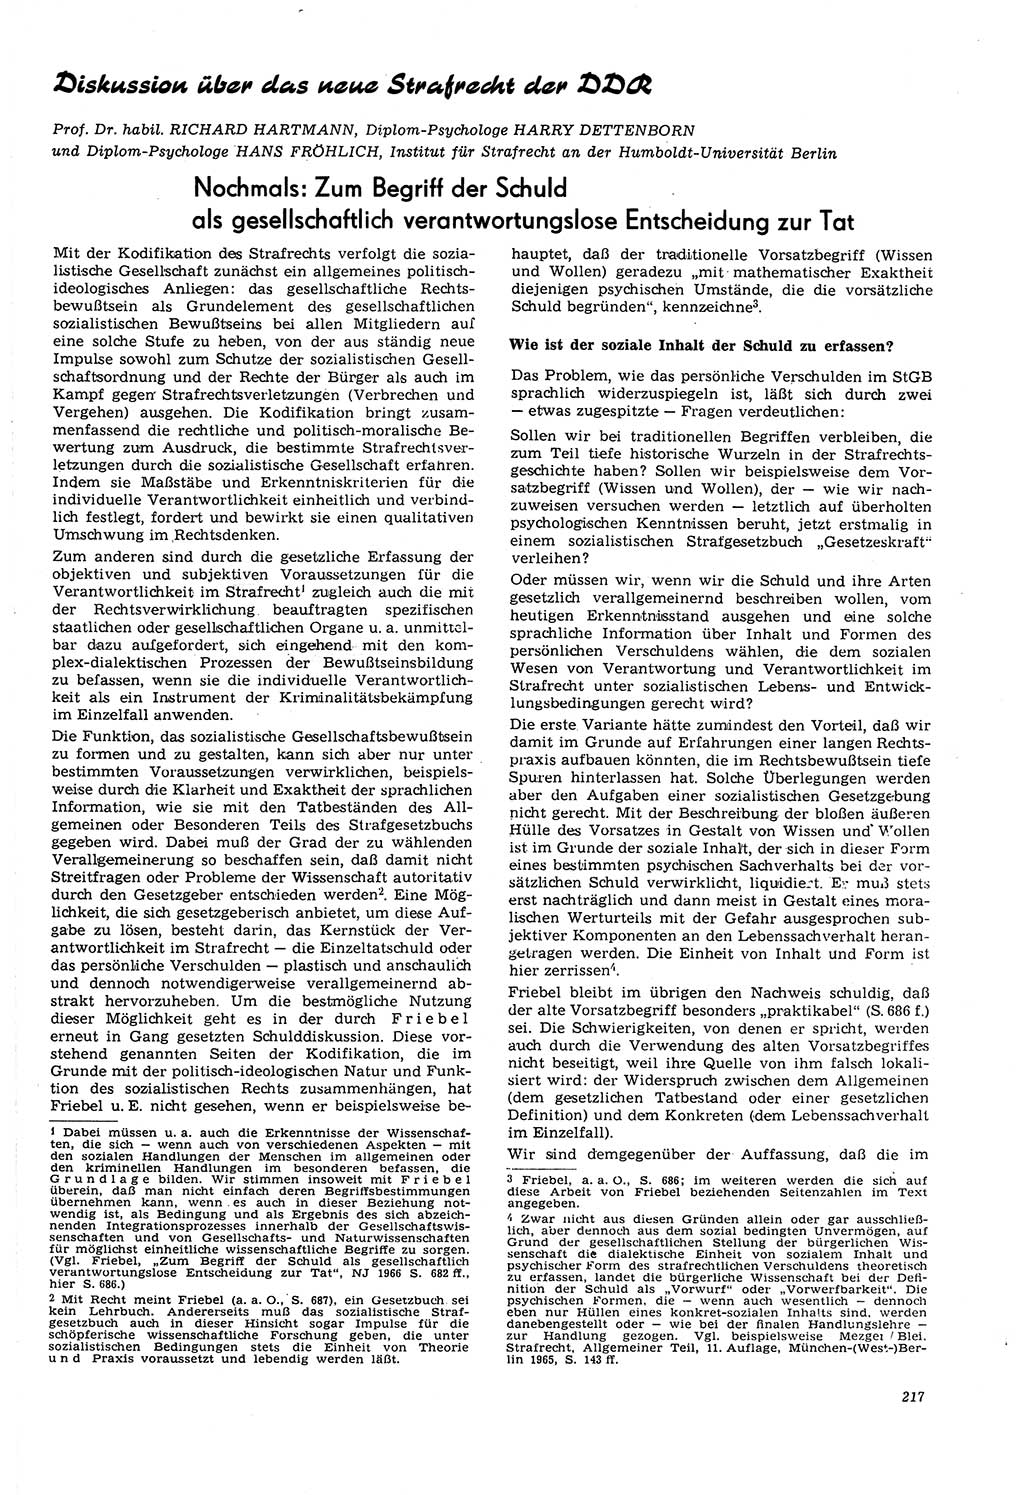 Neue Justiz (NJ), Zeitschrift für Recht und Rechtswissenschaft [Deutsche Demokratische Republik (DDR)], 21. Jahrgang 1967, Seite 217 (NJ DDR 1967, S. 217)